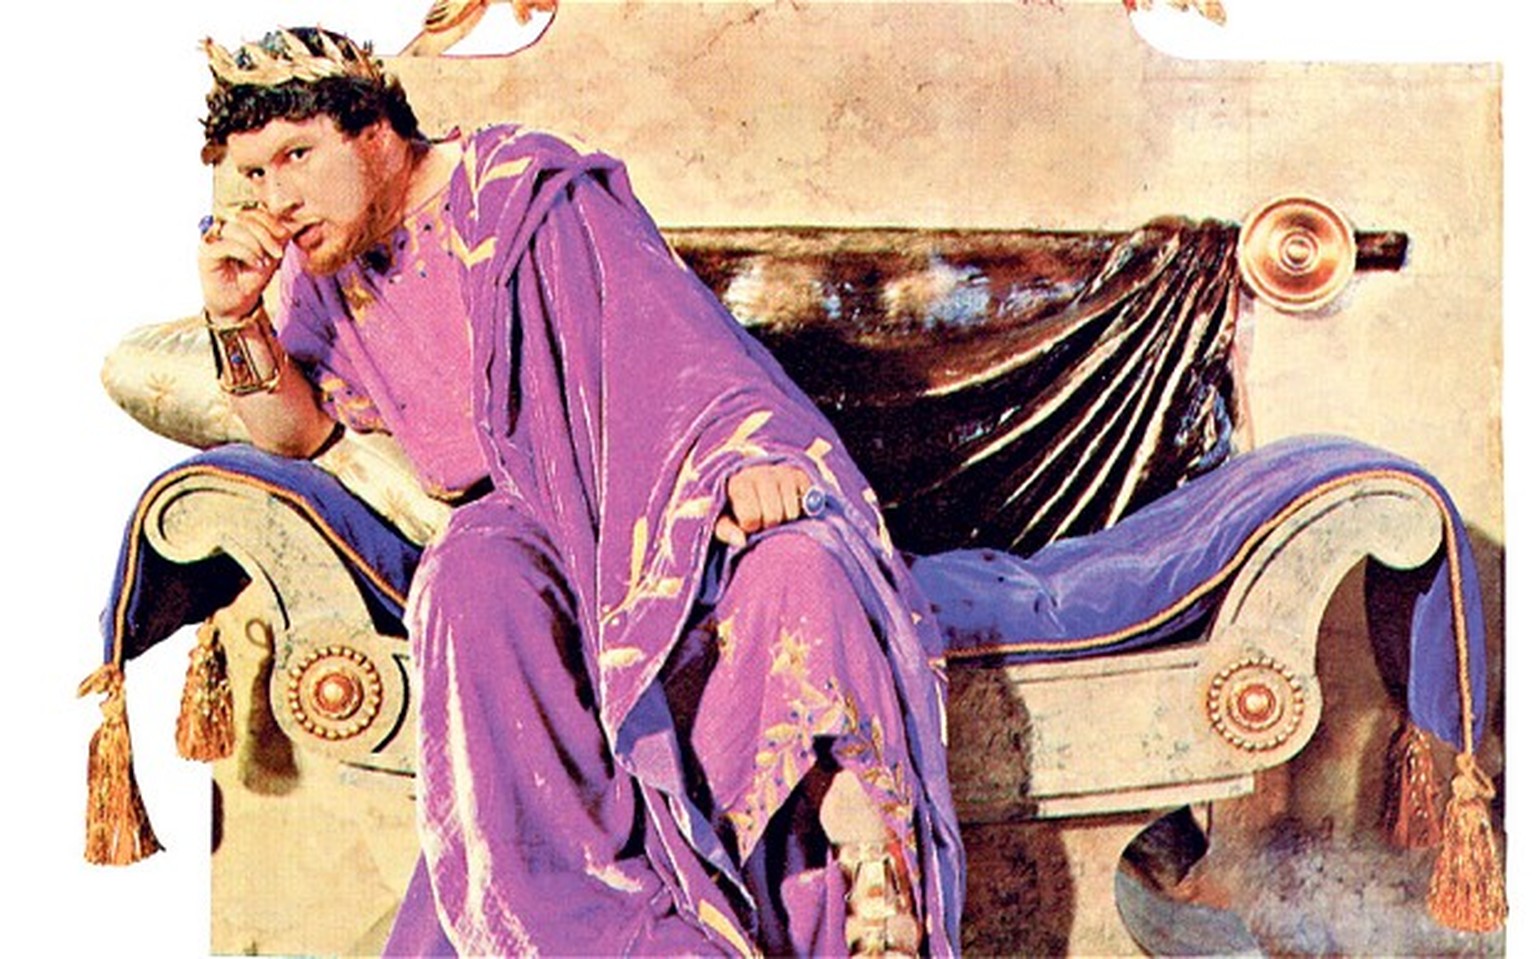 Ein wahnsinniger Nero, gespielt vom grandiosen Peter Ustinov im Film «Quo Vadis» (1951) nach der Romanvorlage des polnischen Literaturnobelpreisträgers Henryk Sienkiewicz.